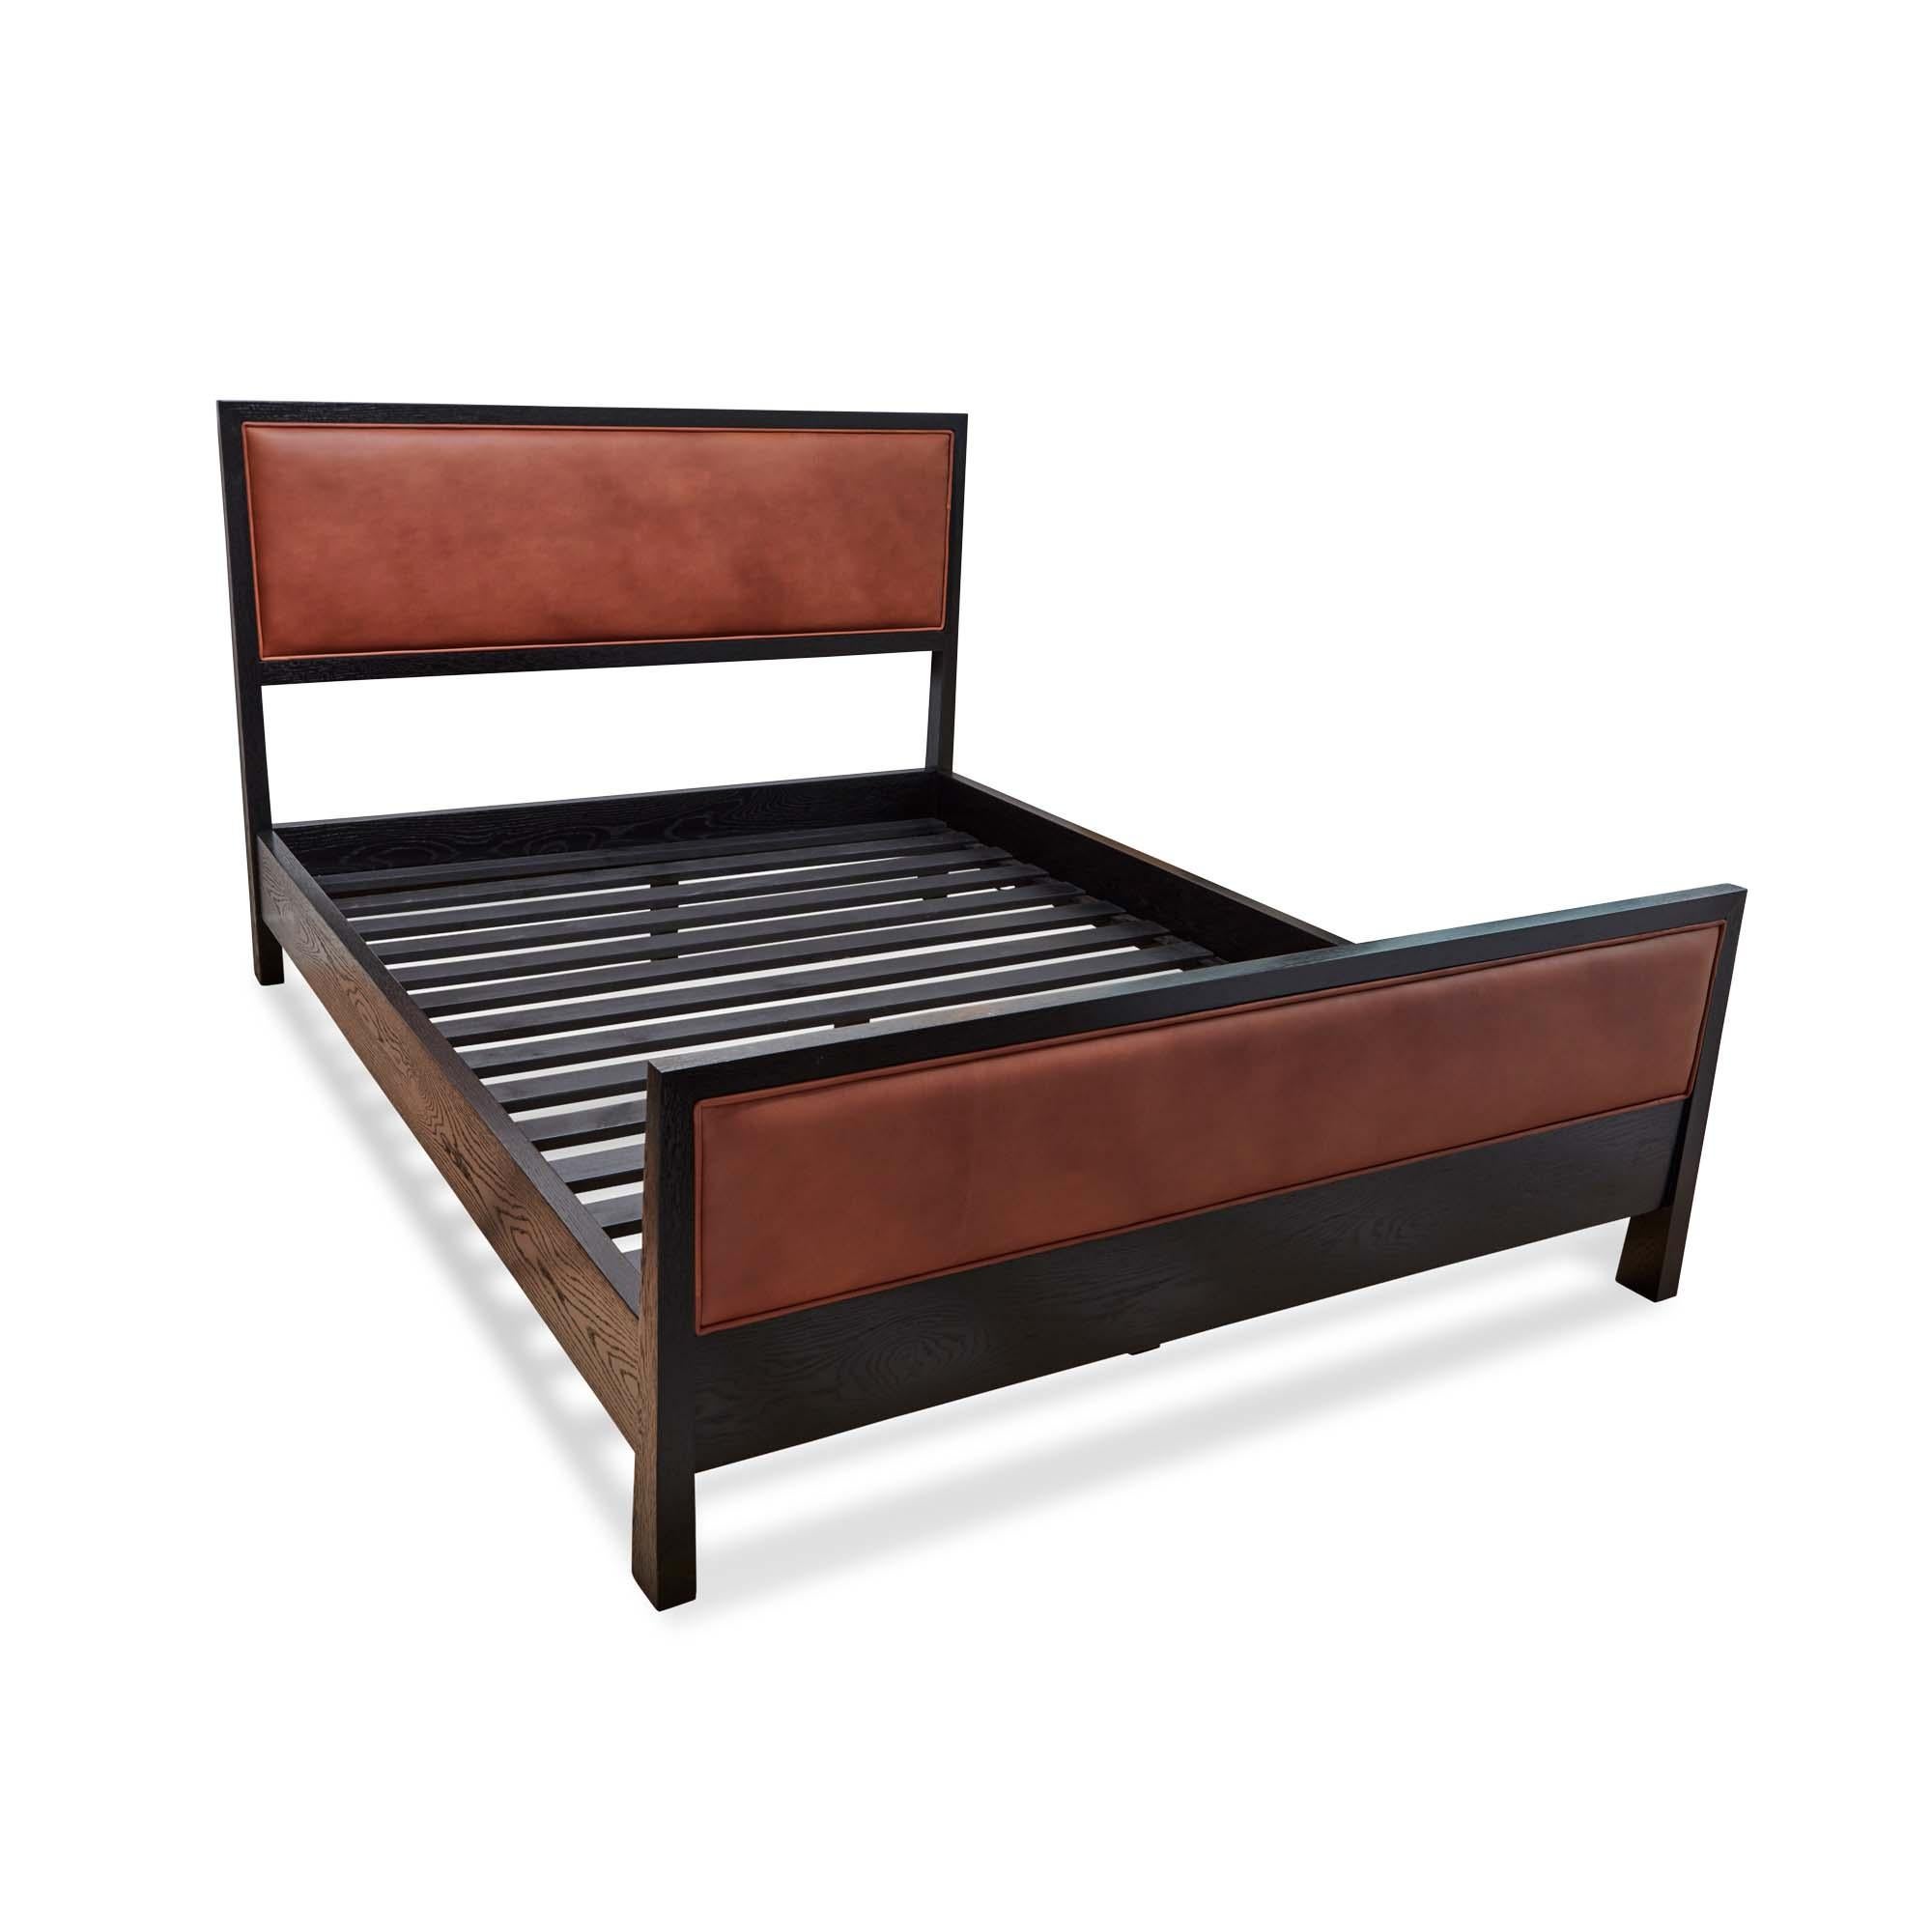 Das Bett Auden ist ein Bett mit Massivholzrahmen, das entweder in amerikanischem Nussbaum oder in Weißeiche gefertigt werden kann. Das Möbelstück verfügt über ein gepolstertes Kopf- und Fußteil. Latten sind vorhanden. Hier abgebildet in